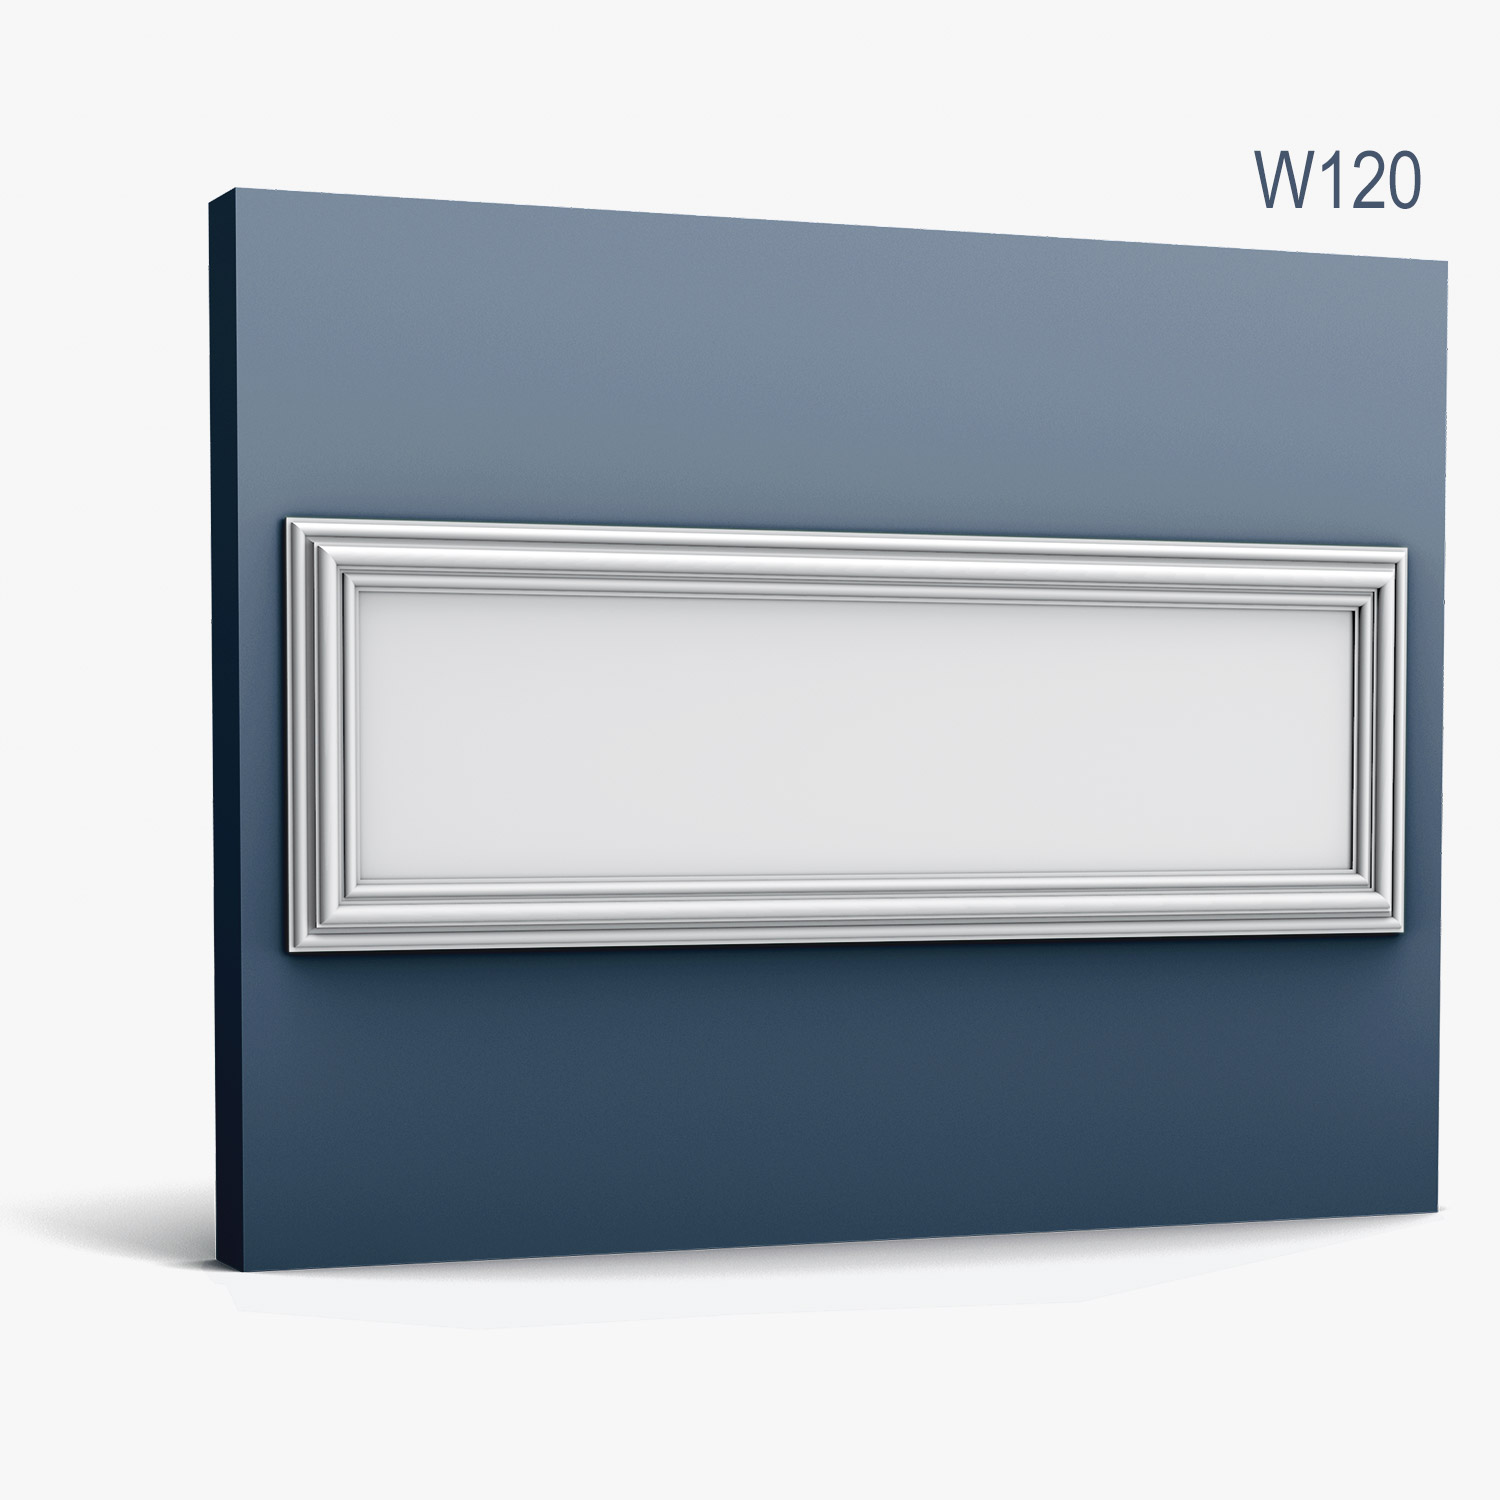 Panel Modern W120, Dimensiuni: 150 X 50 X 3.2 cm, Orac Decor Orac Decor